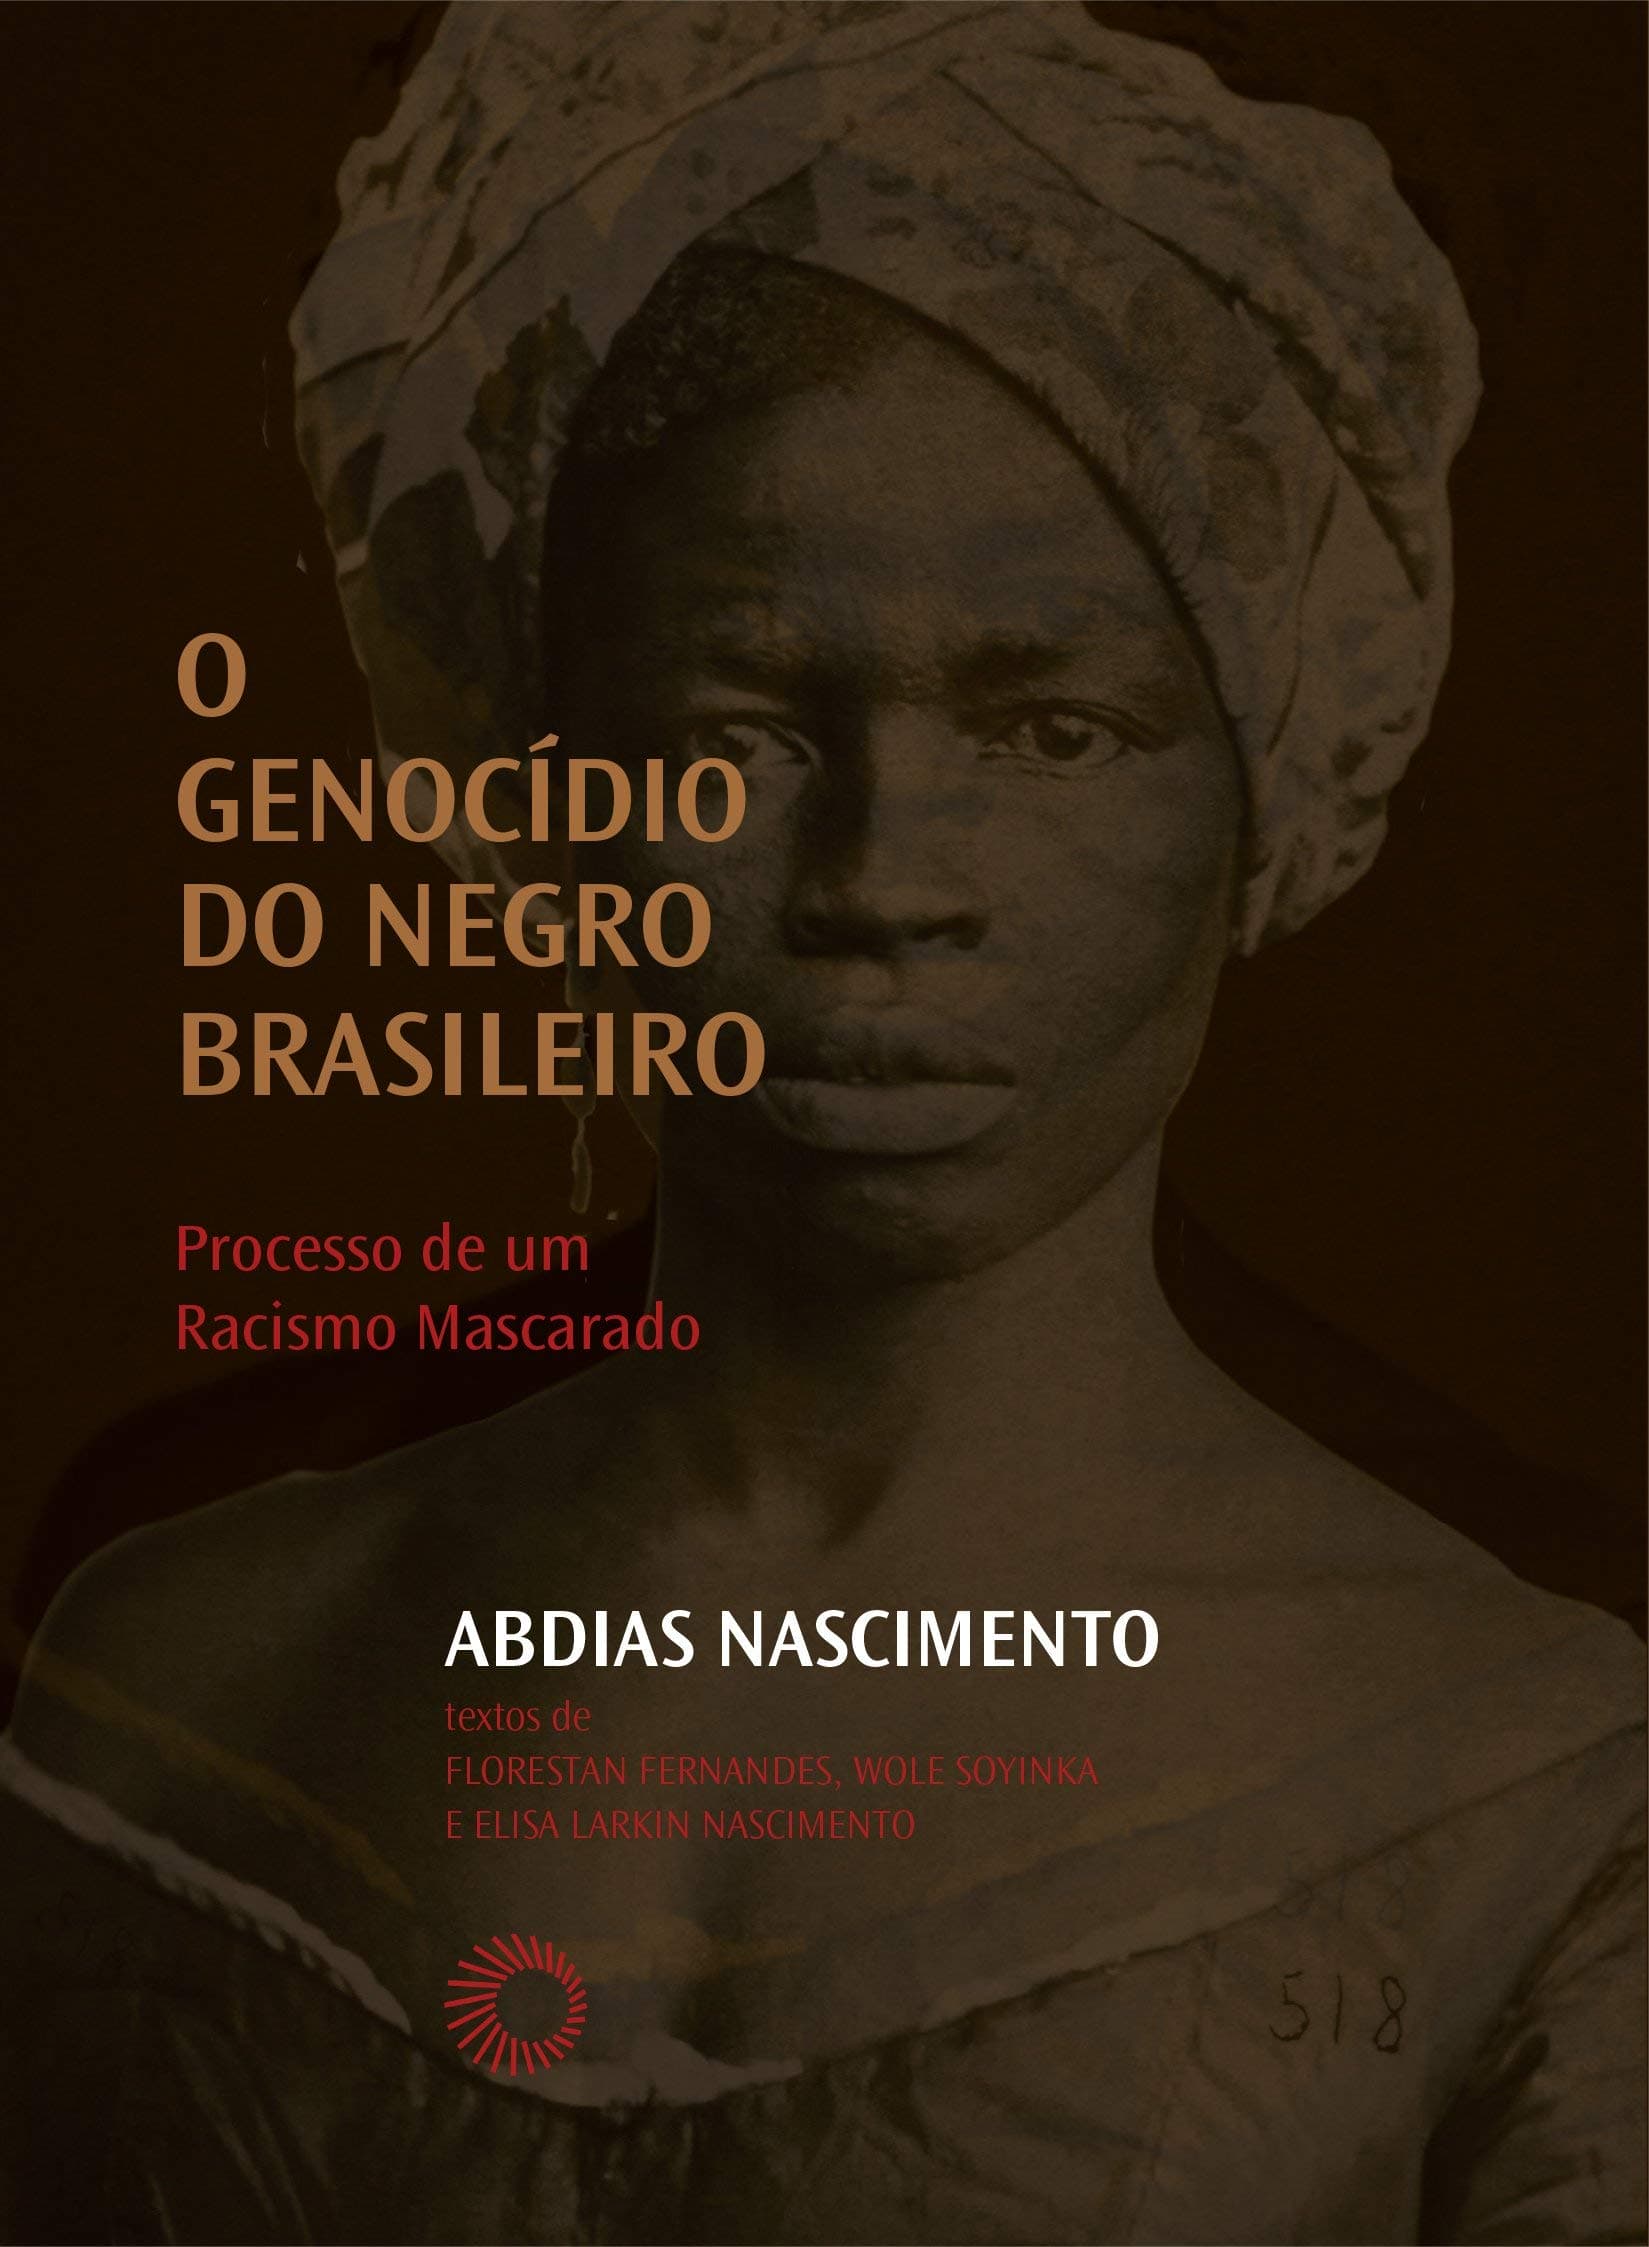 ROSA DE LIMA analisa livro de ABDIAS NASCIMENTO, Genocidio do Negro